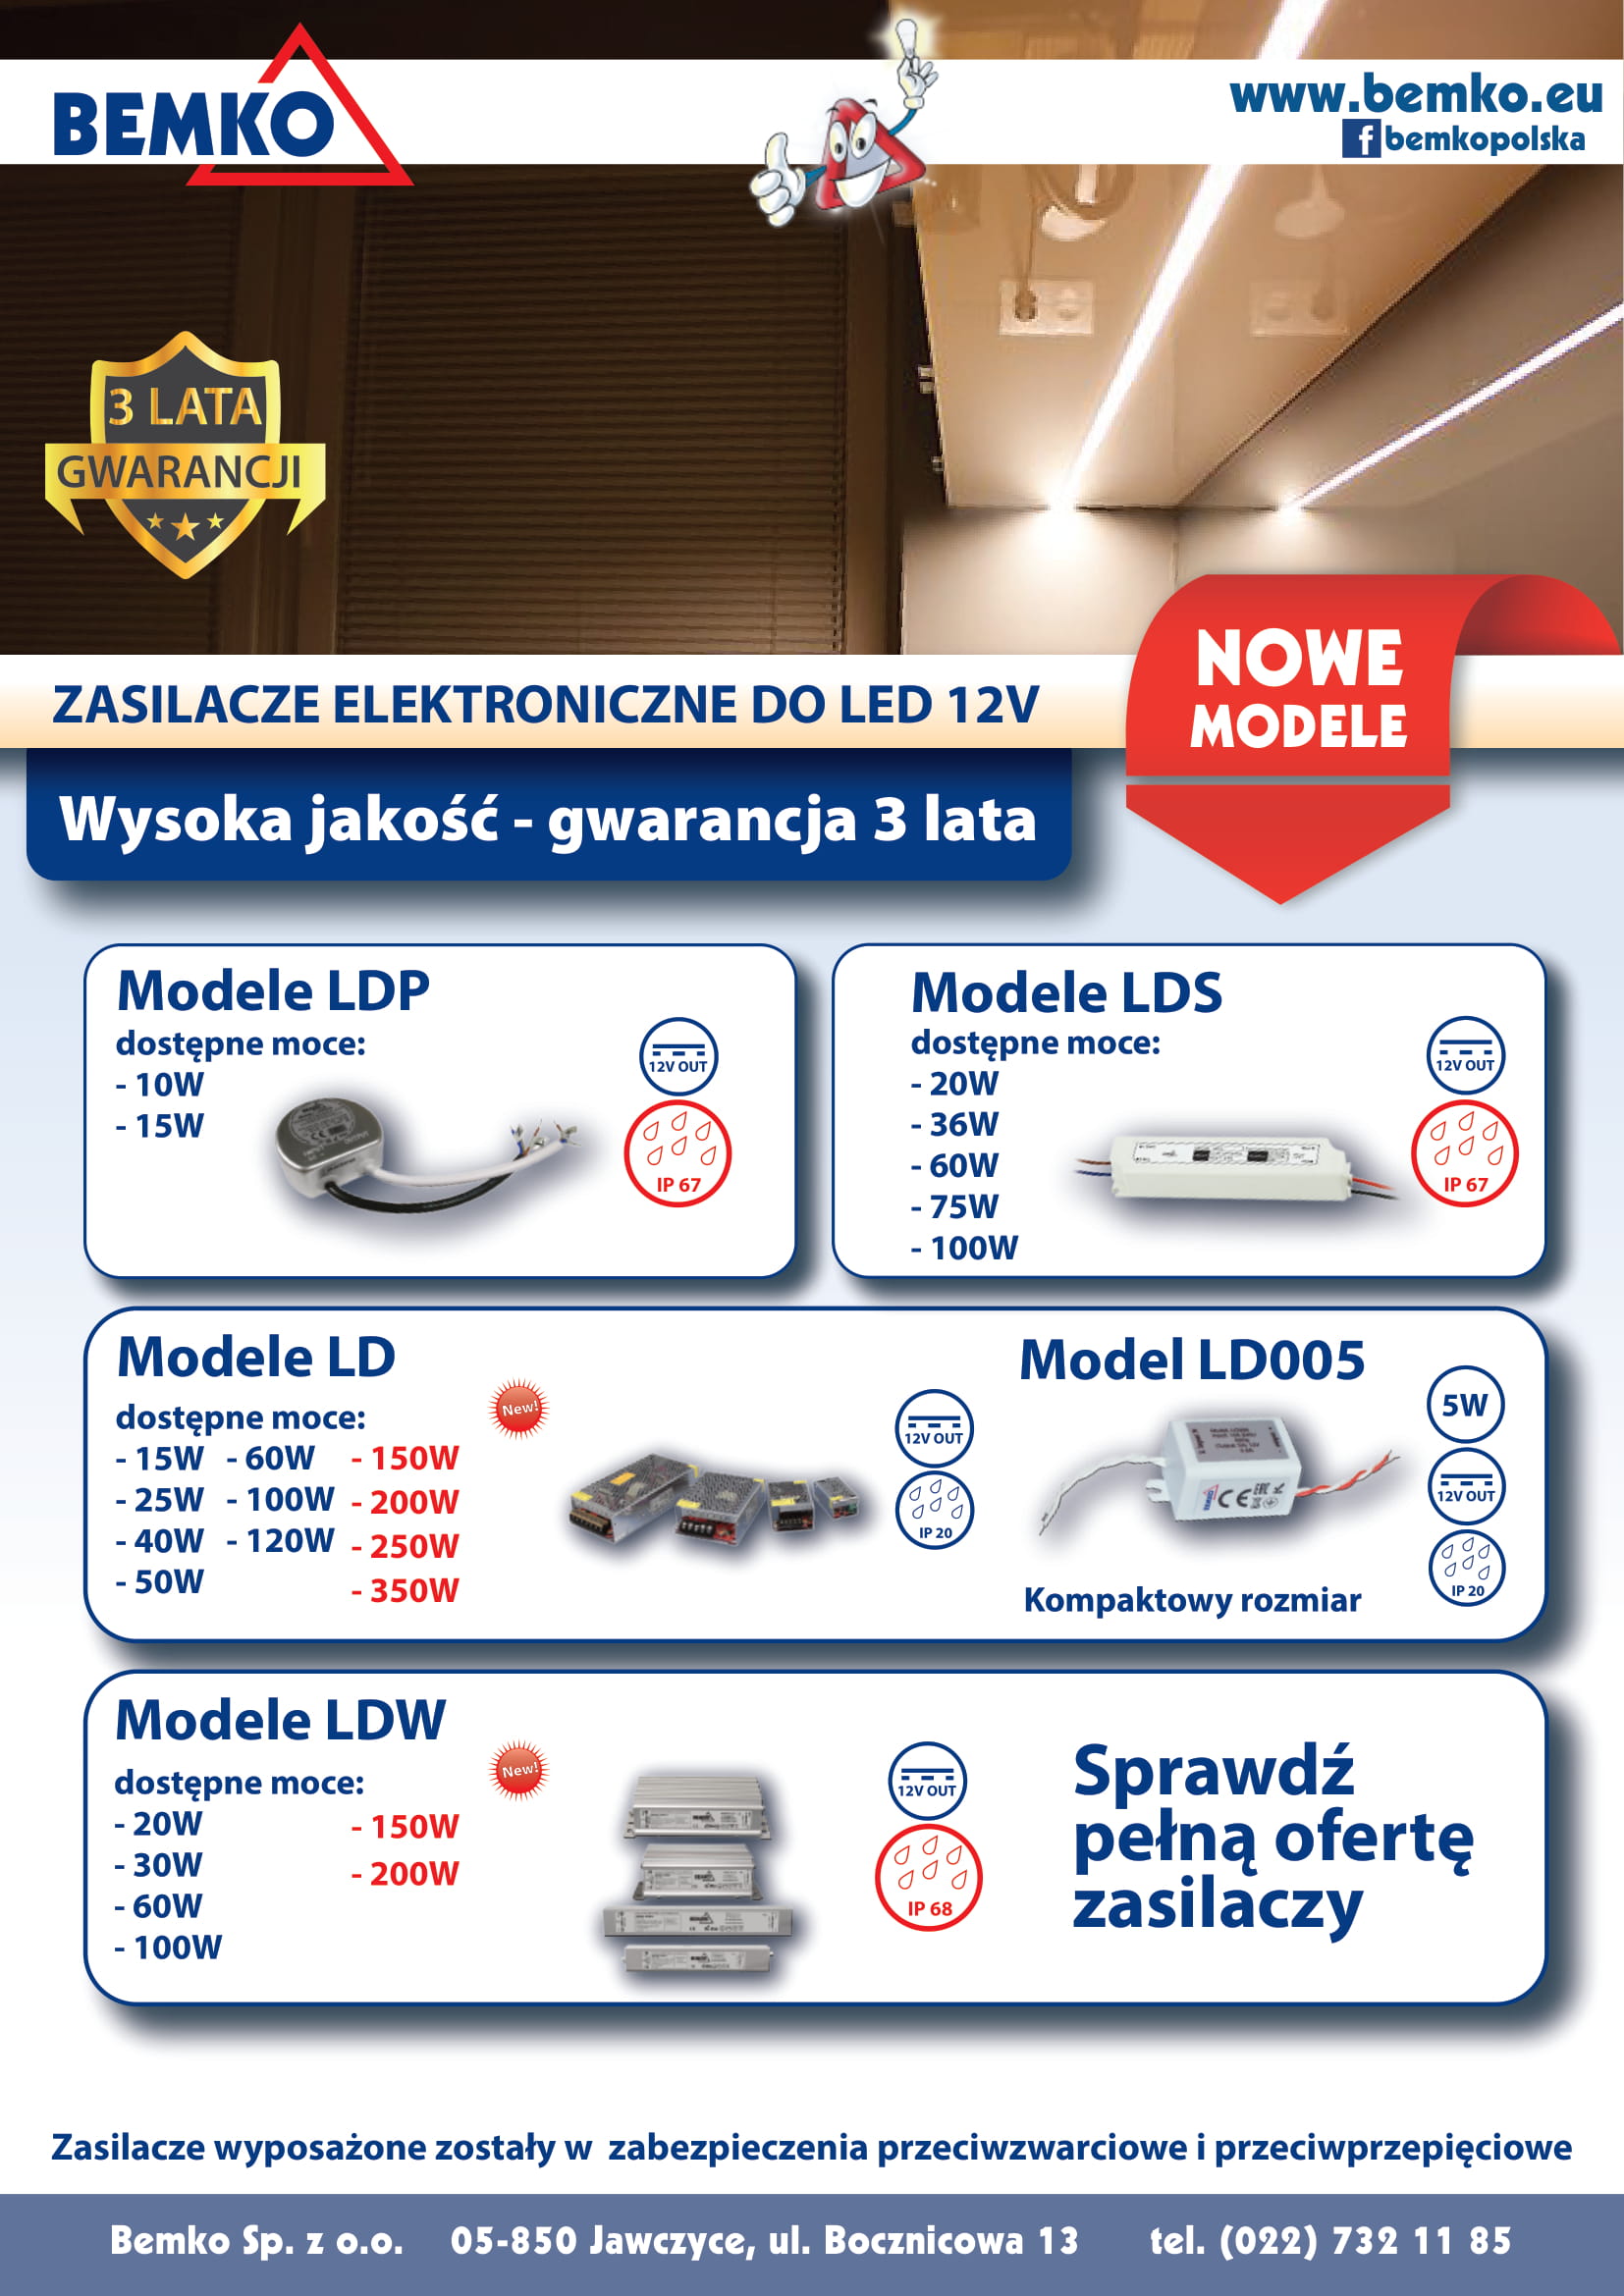 Zasilacze LED - NOWE MODELE